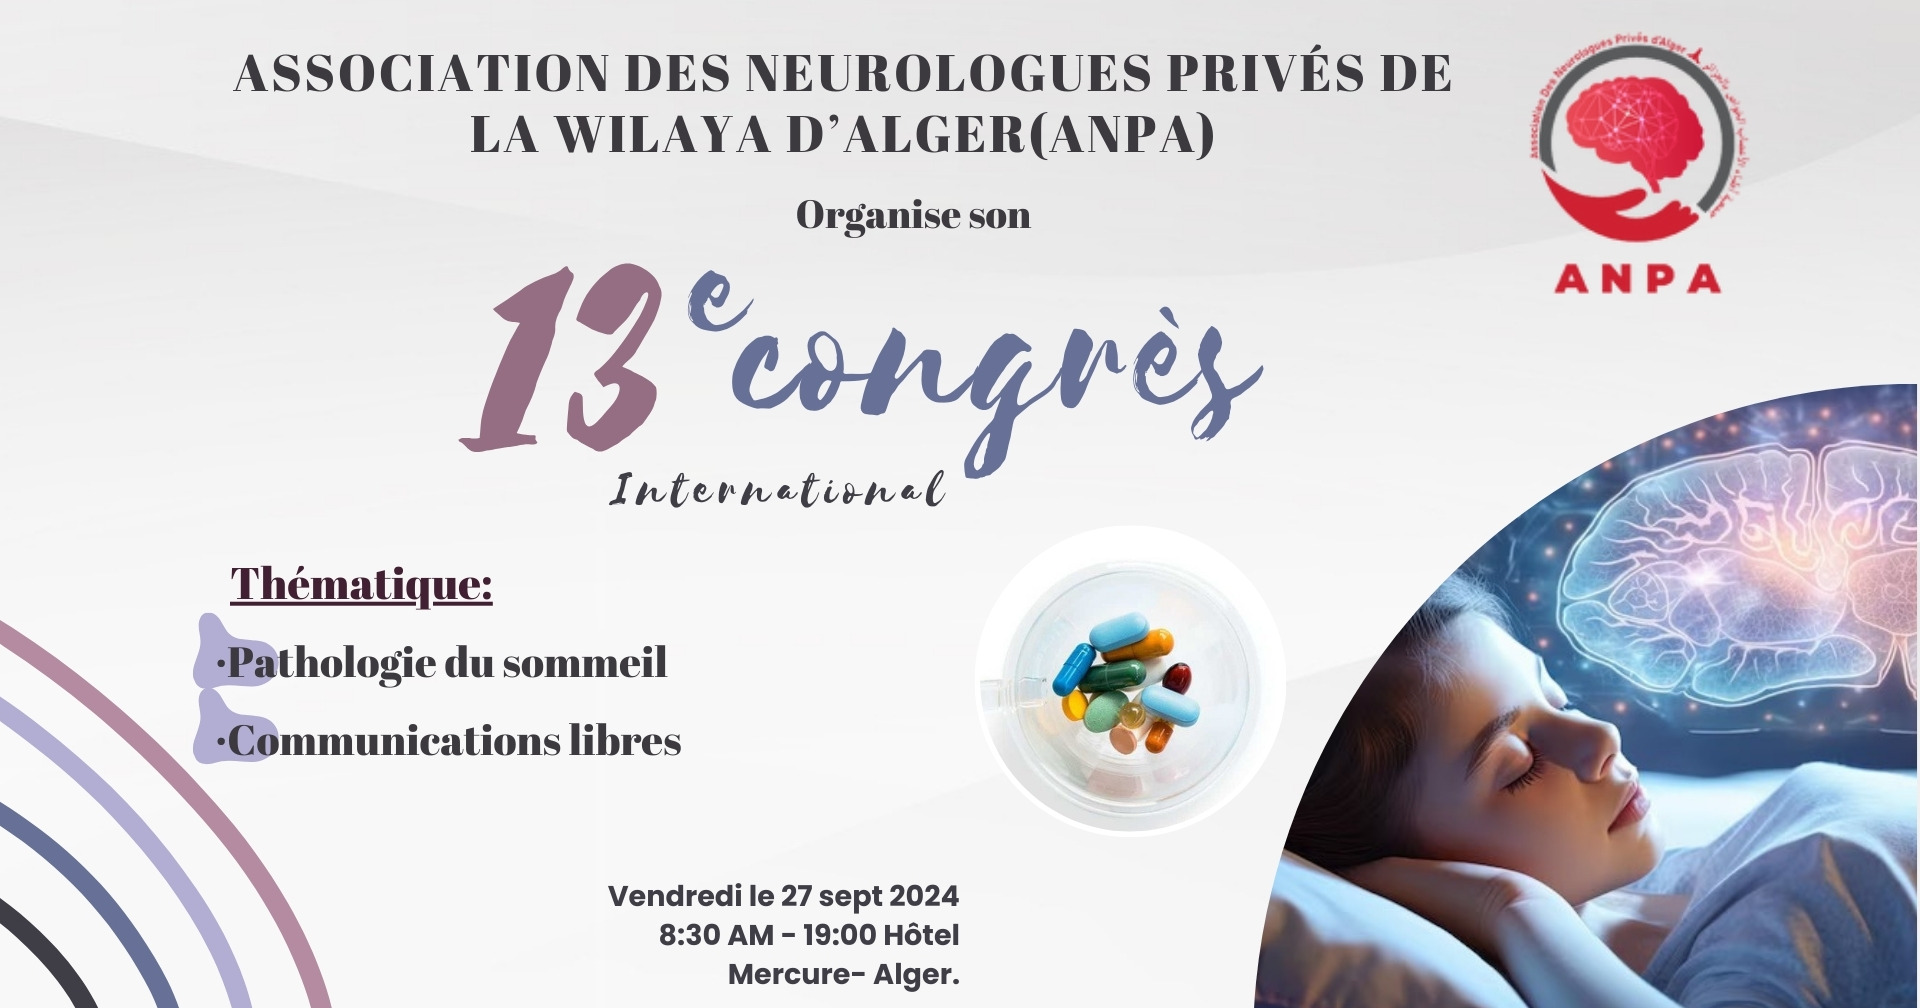 13 ème congrès international de l'Association des Neurologues Privés de la wilaya d’Alger (ANPA) cover image